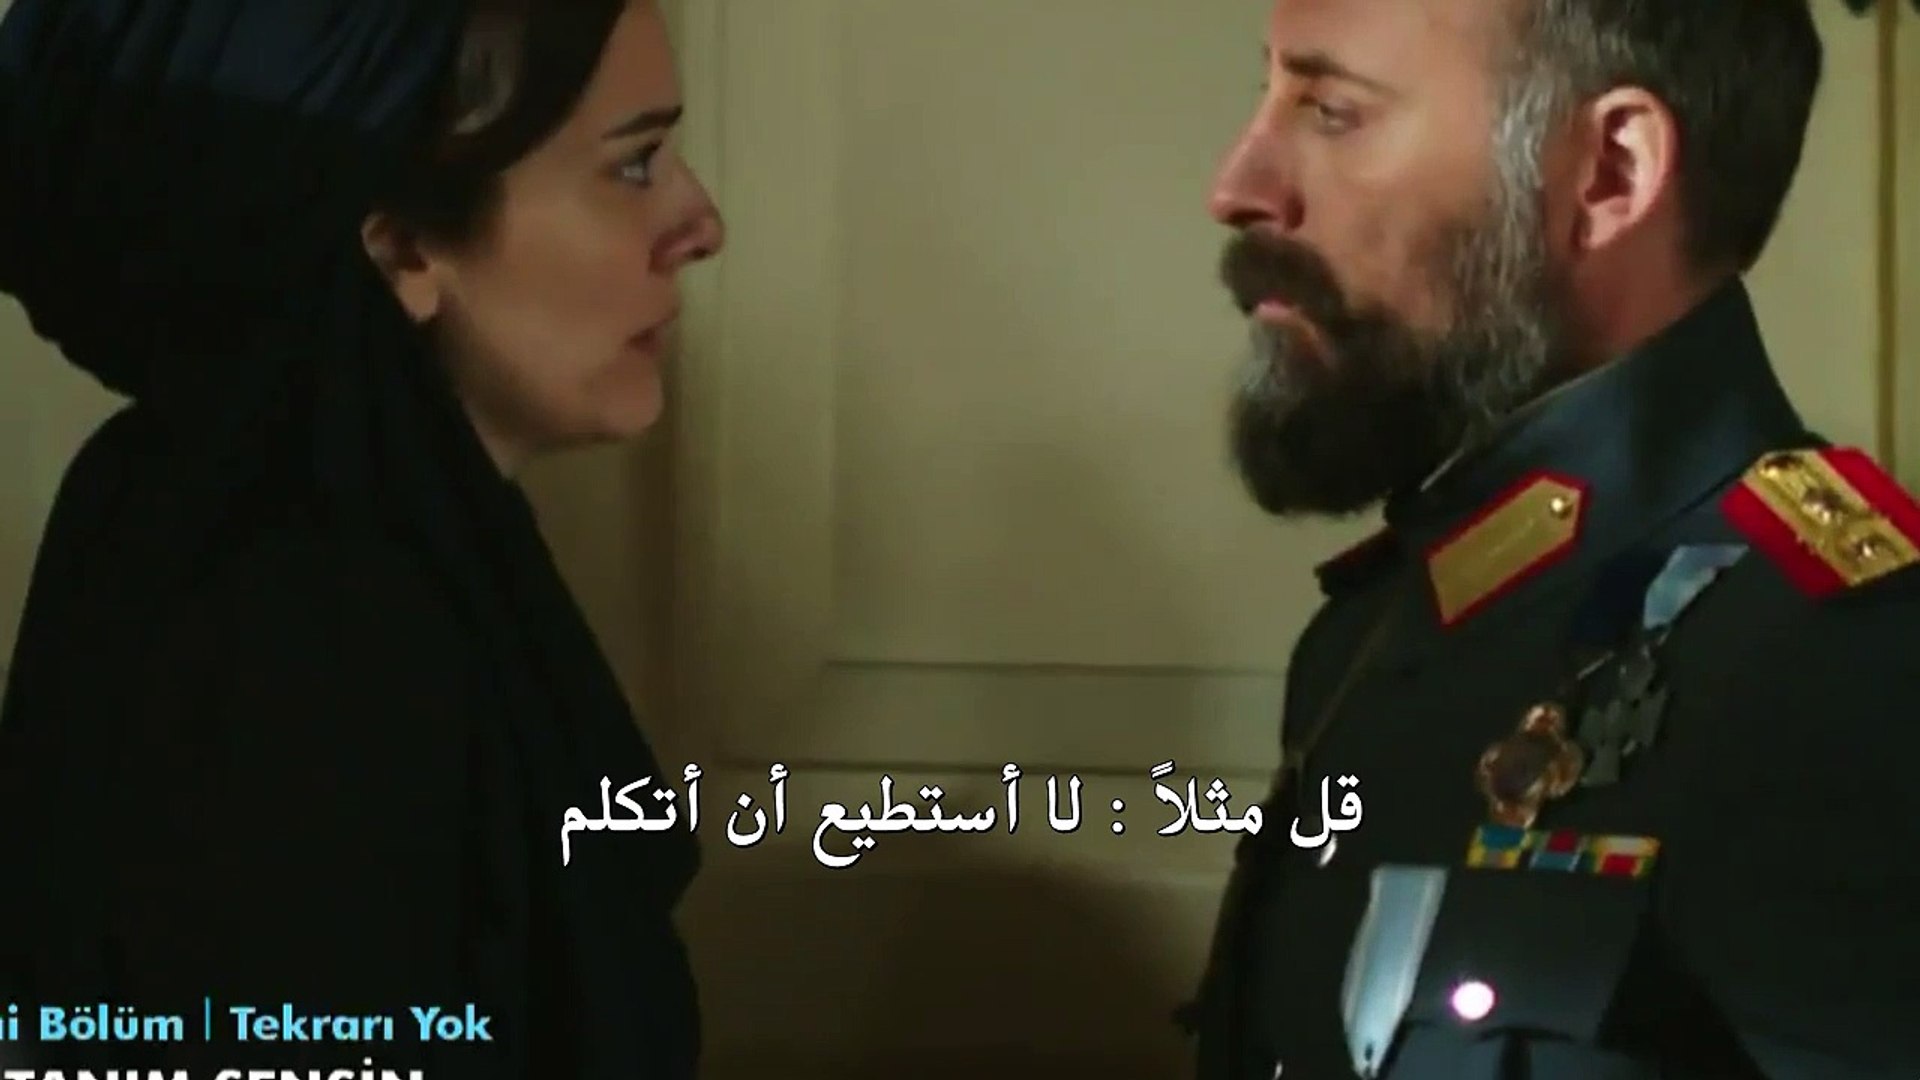 مسلسل أنت وطني اعلان الحلقة 22 مترجم للعربية - video Dailymotion